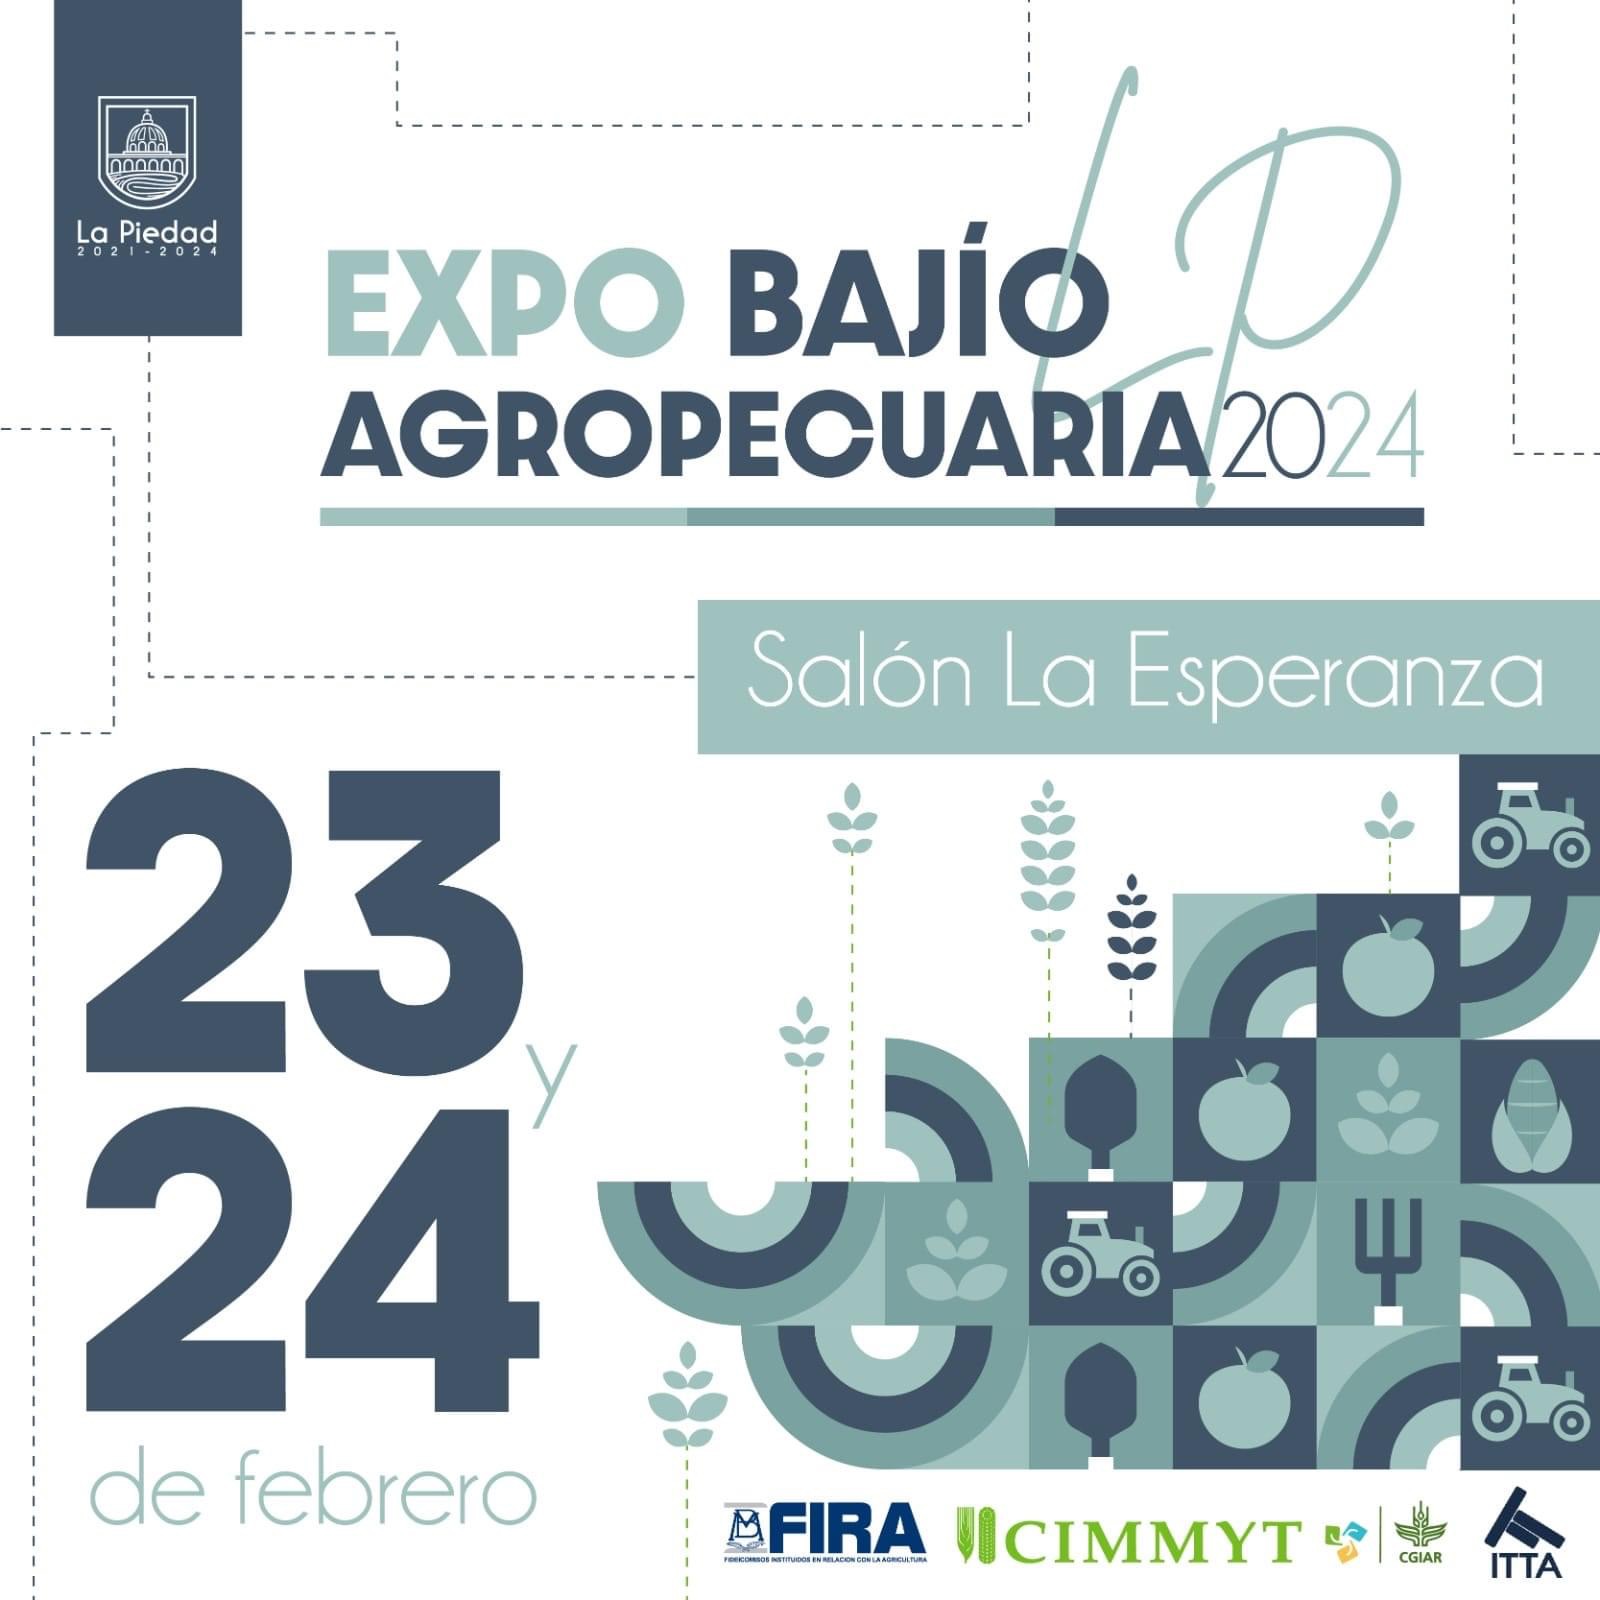 Invita gobierno de La Piedad a Expo Bajío agropecuaria